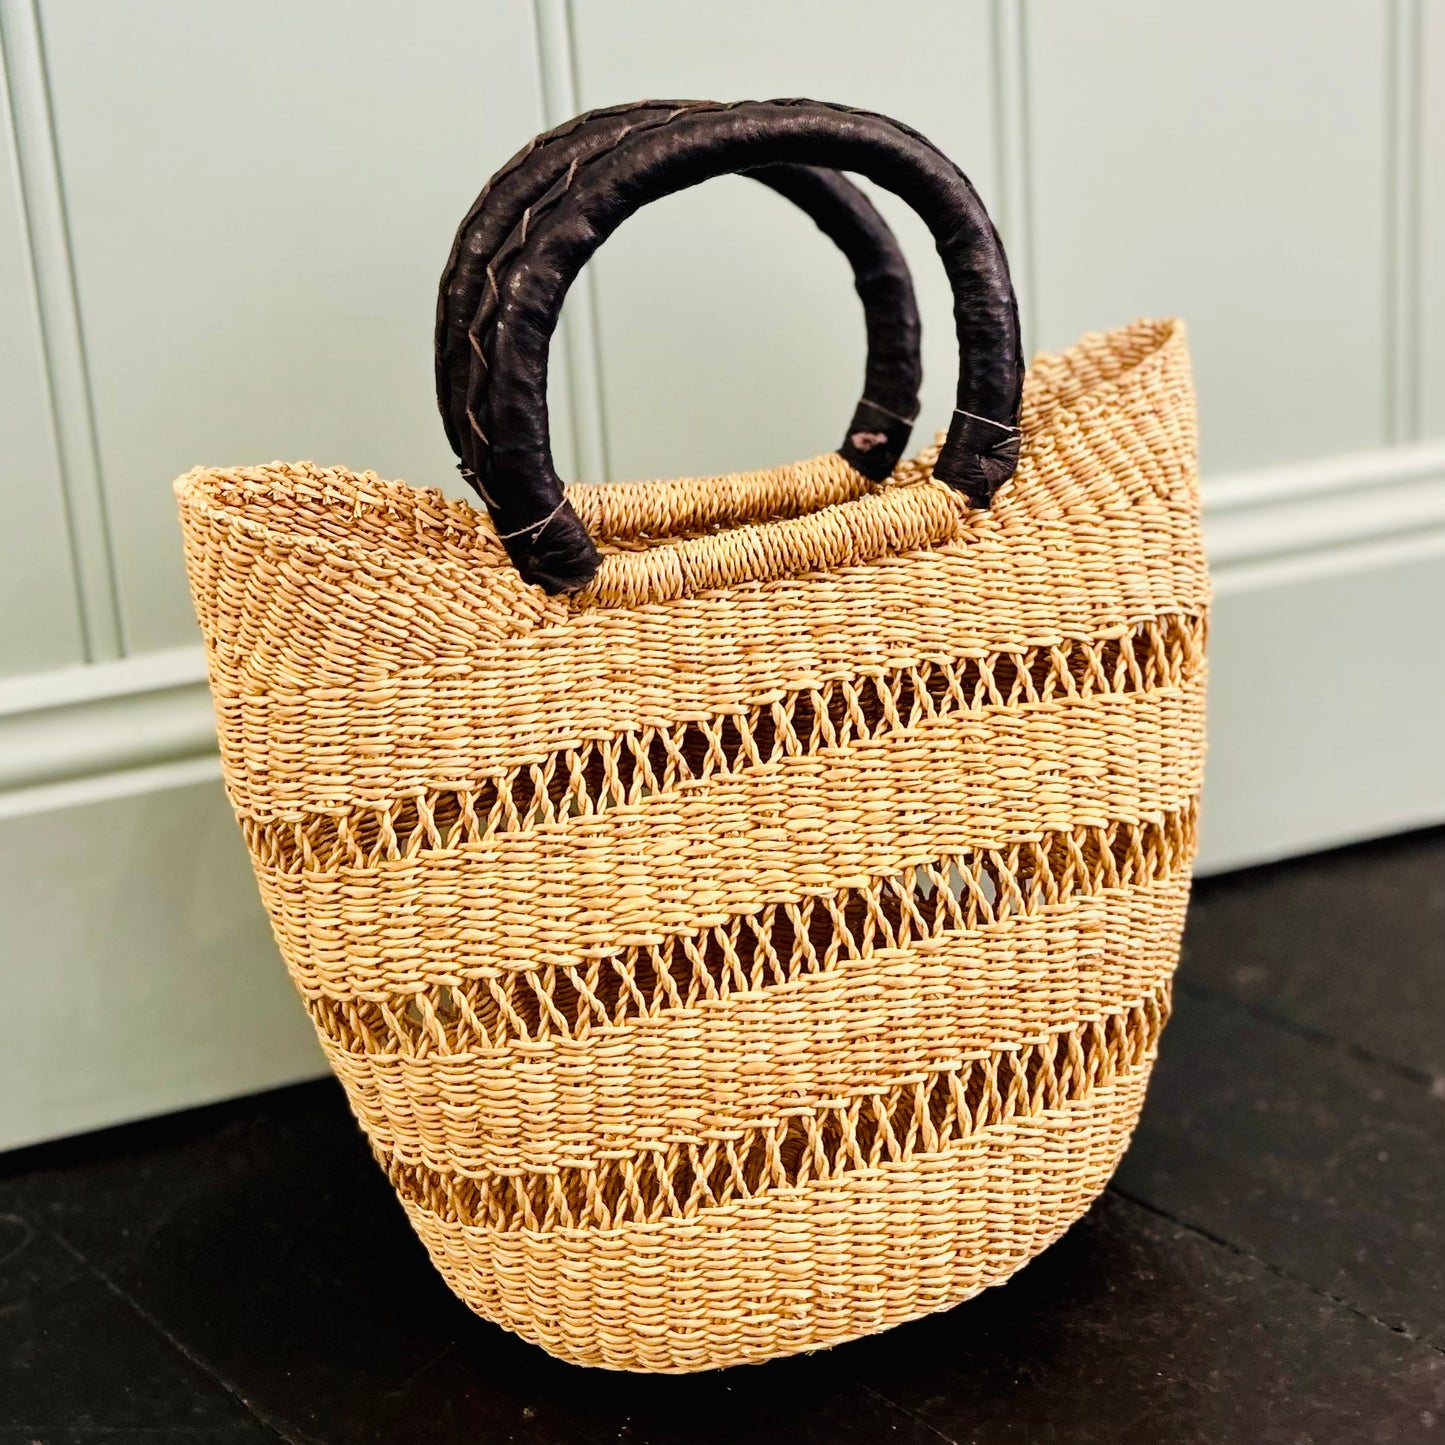 Mini Market Basket Black Leather Open Weave